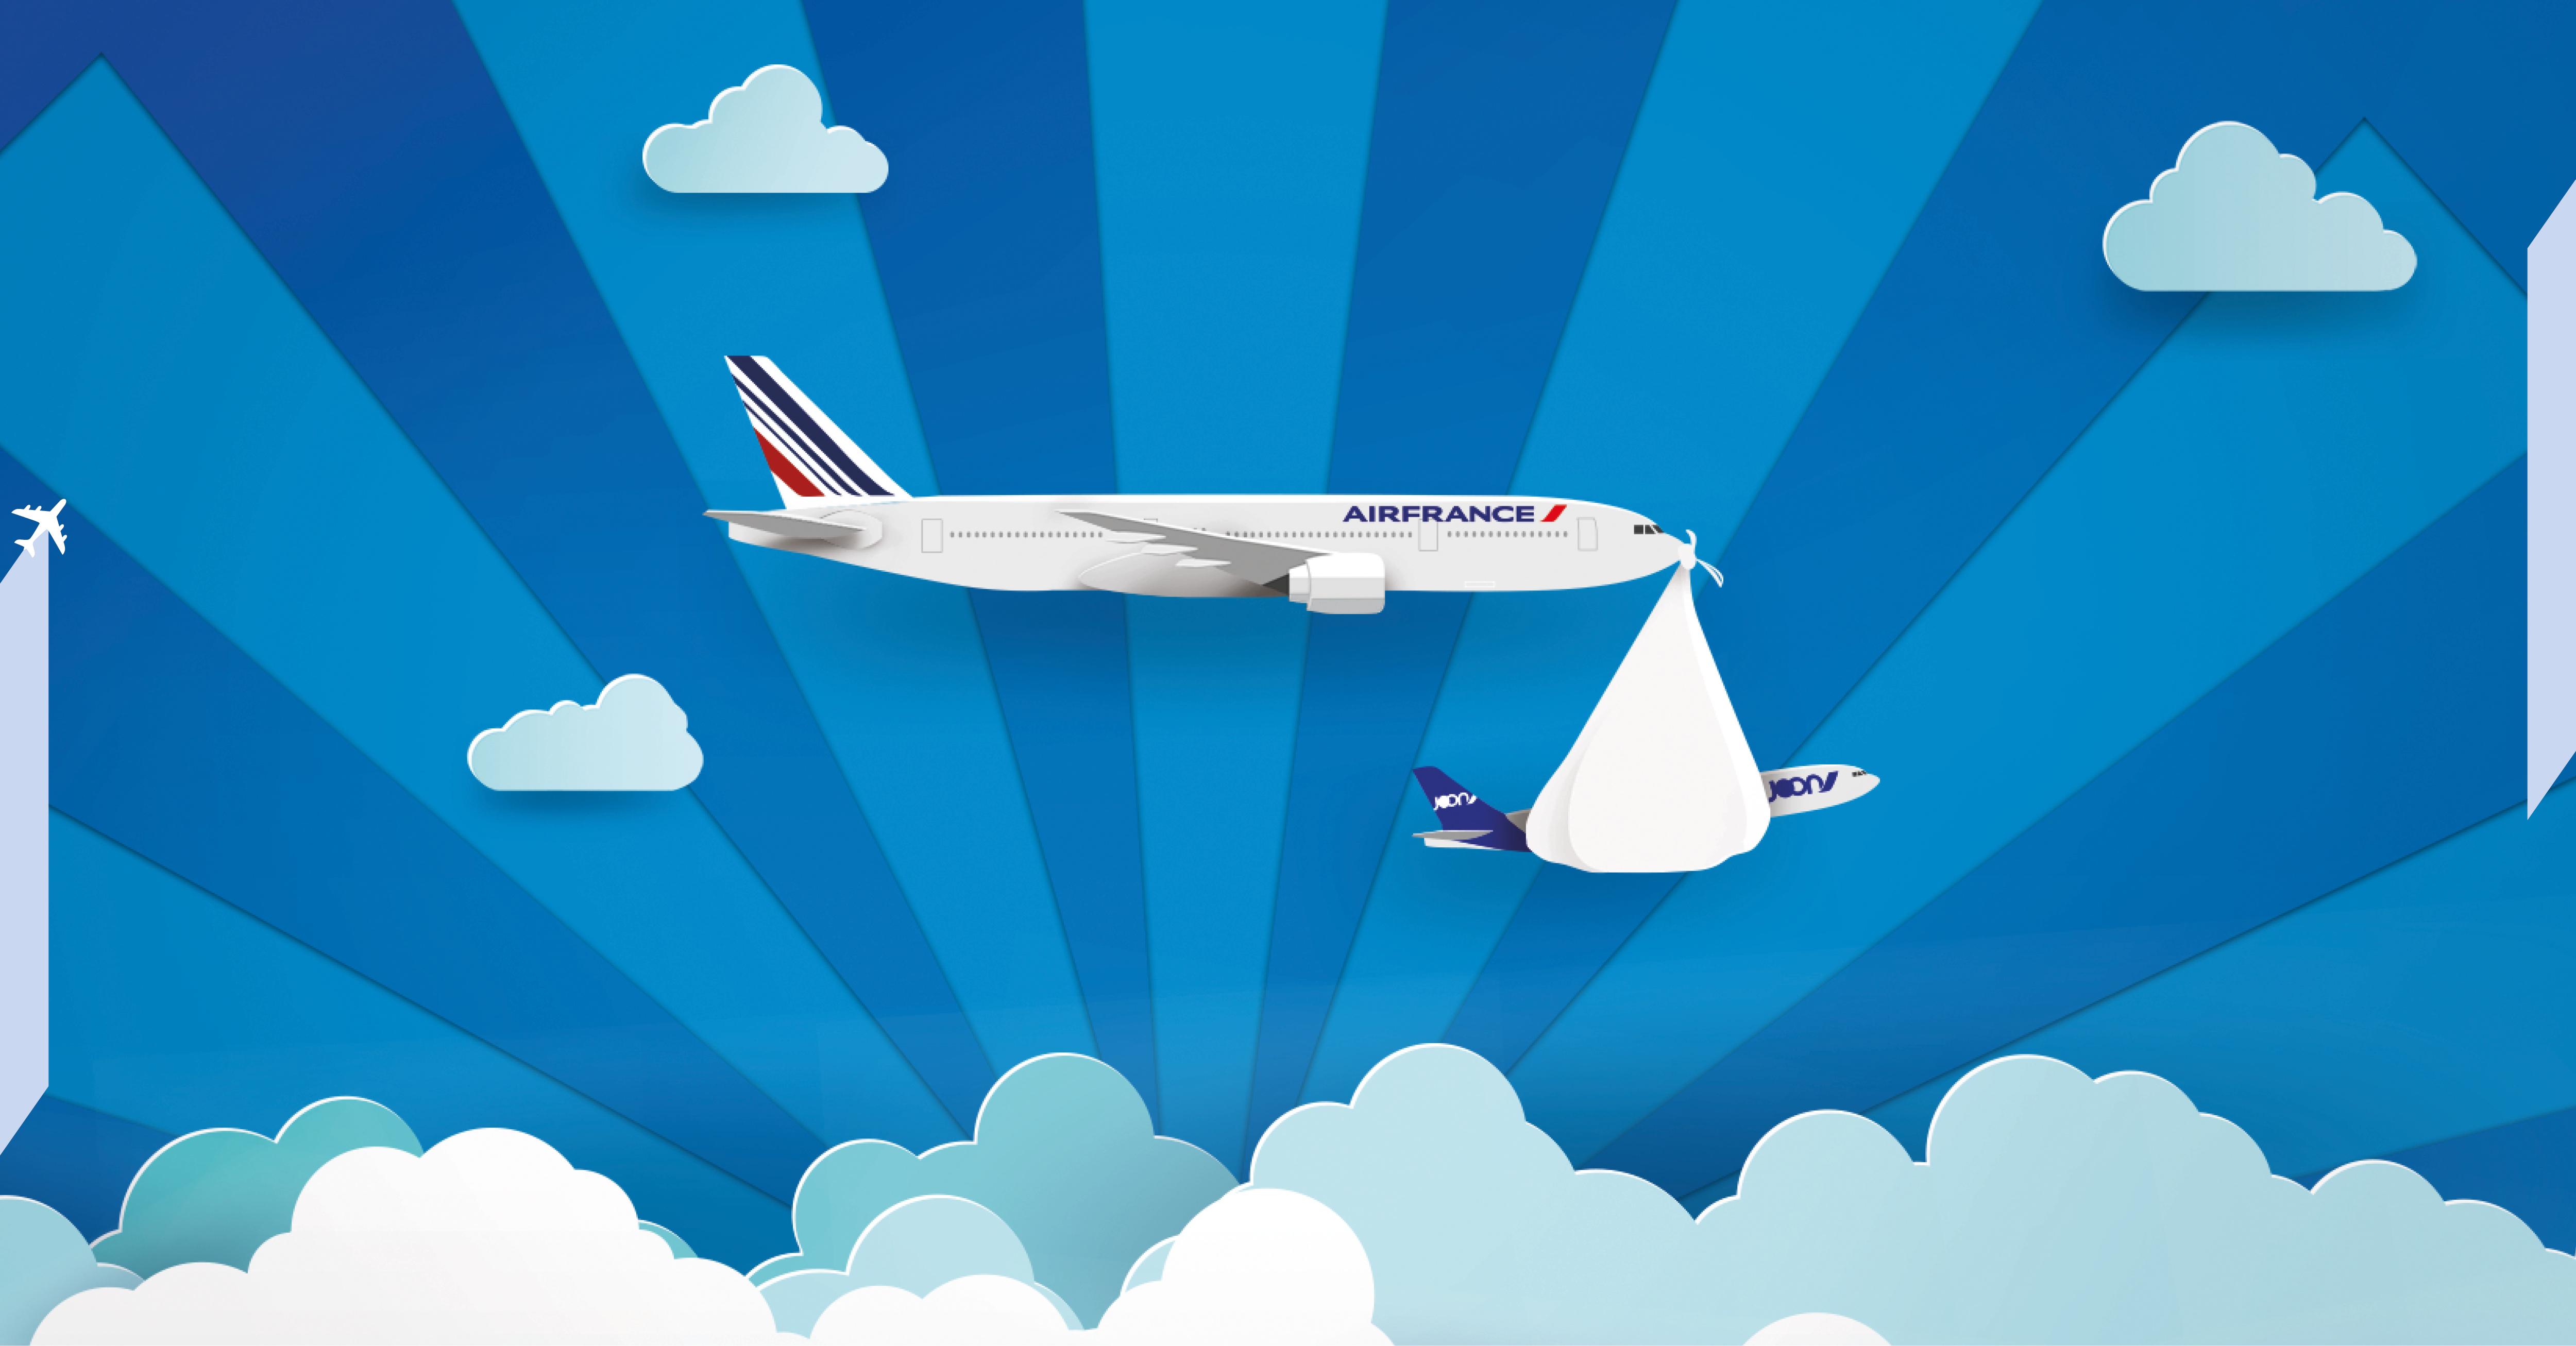 air france jordan careers, Air France est fière de vous faire part d'un heureux événement. Le 25 septembre, découvrez Joon, le voyage nouvelle génération par Air France.